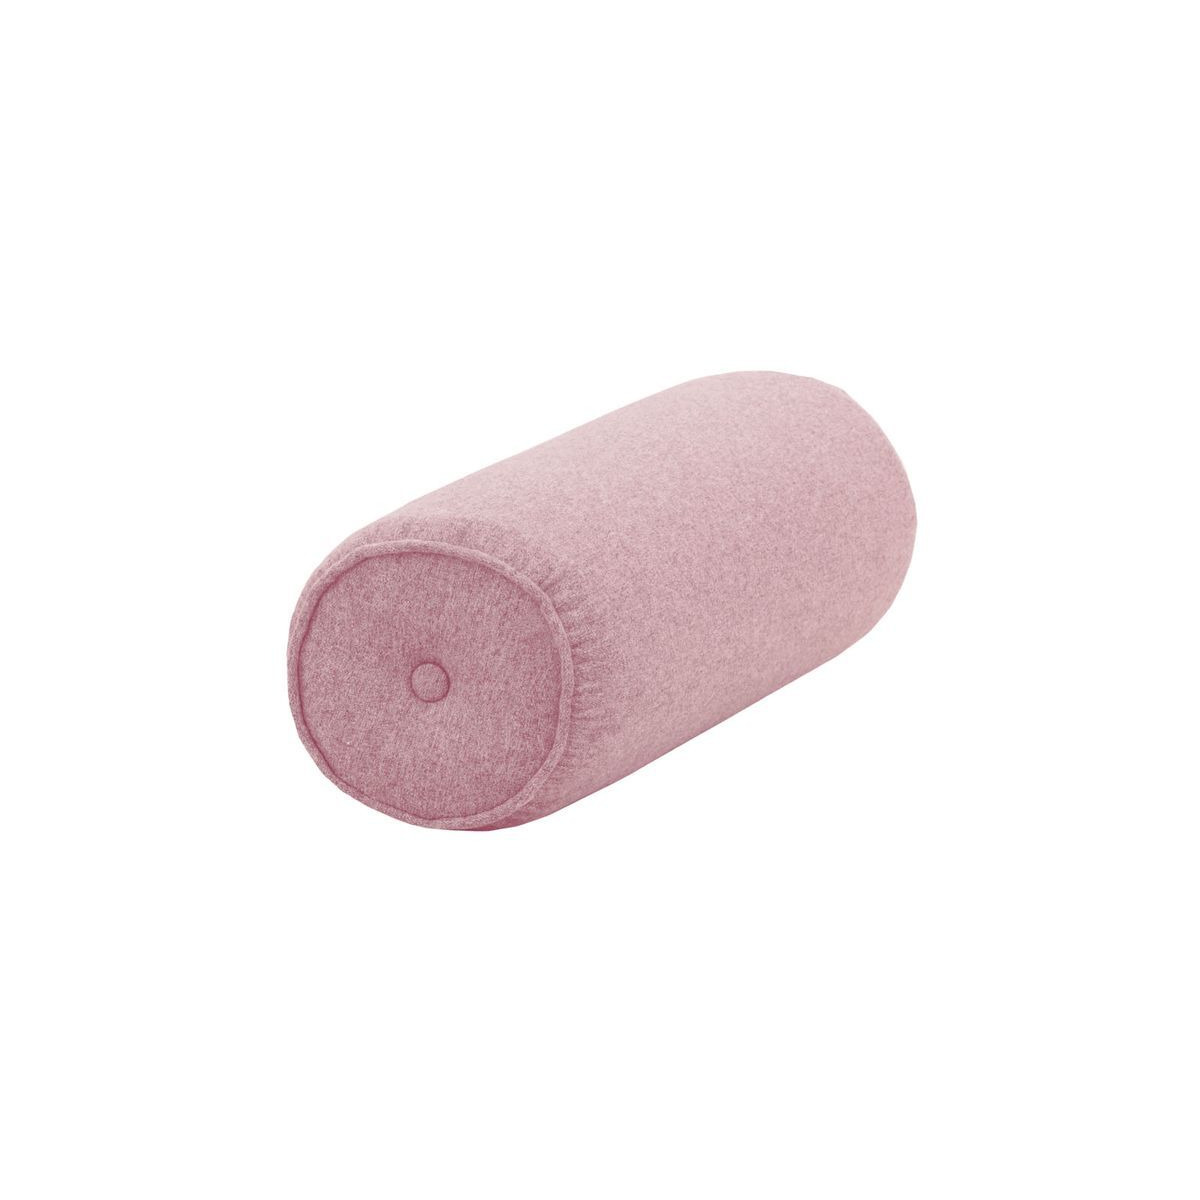 Bolster cushion, pink - image 1